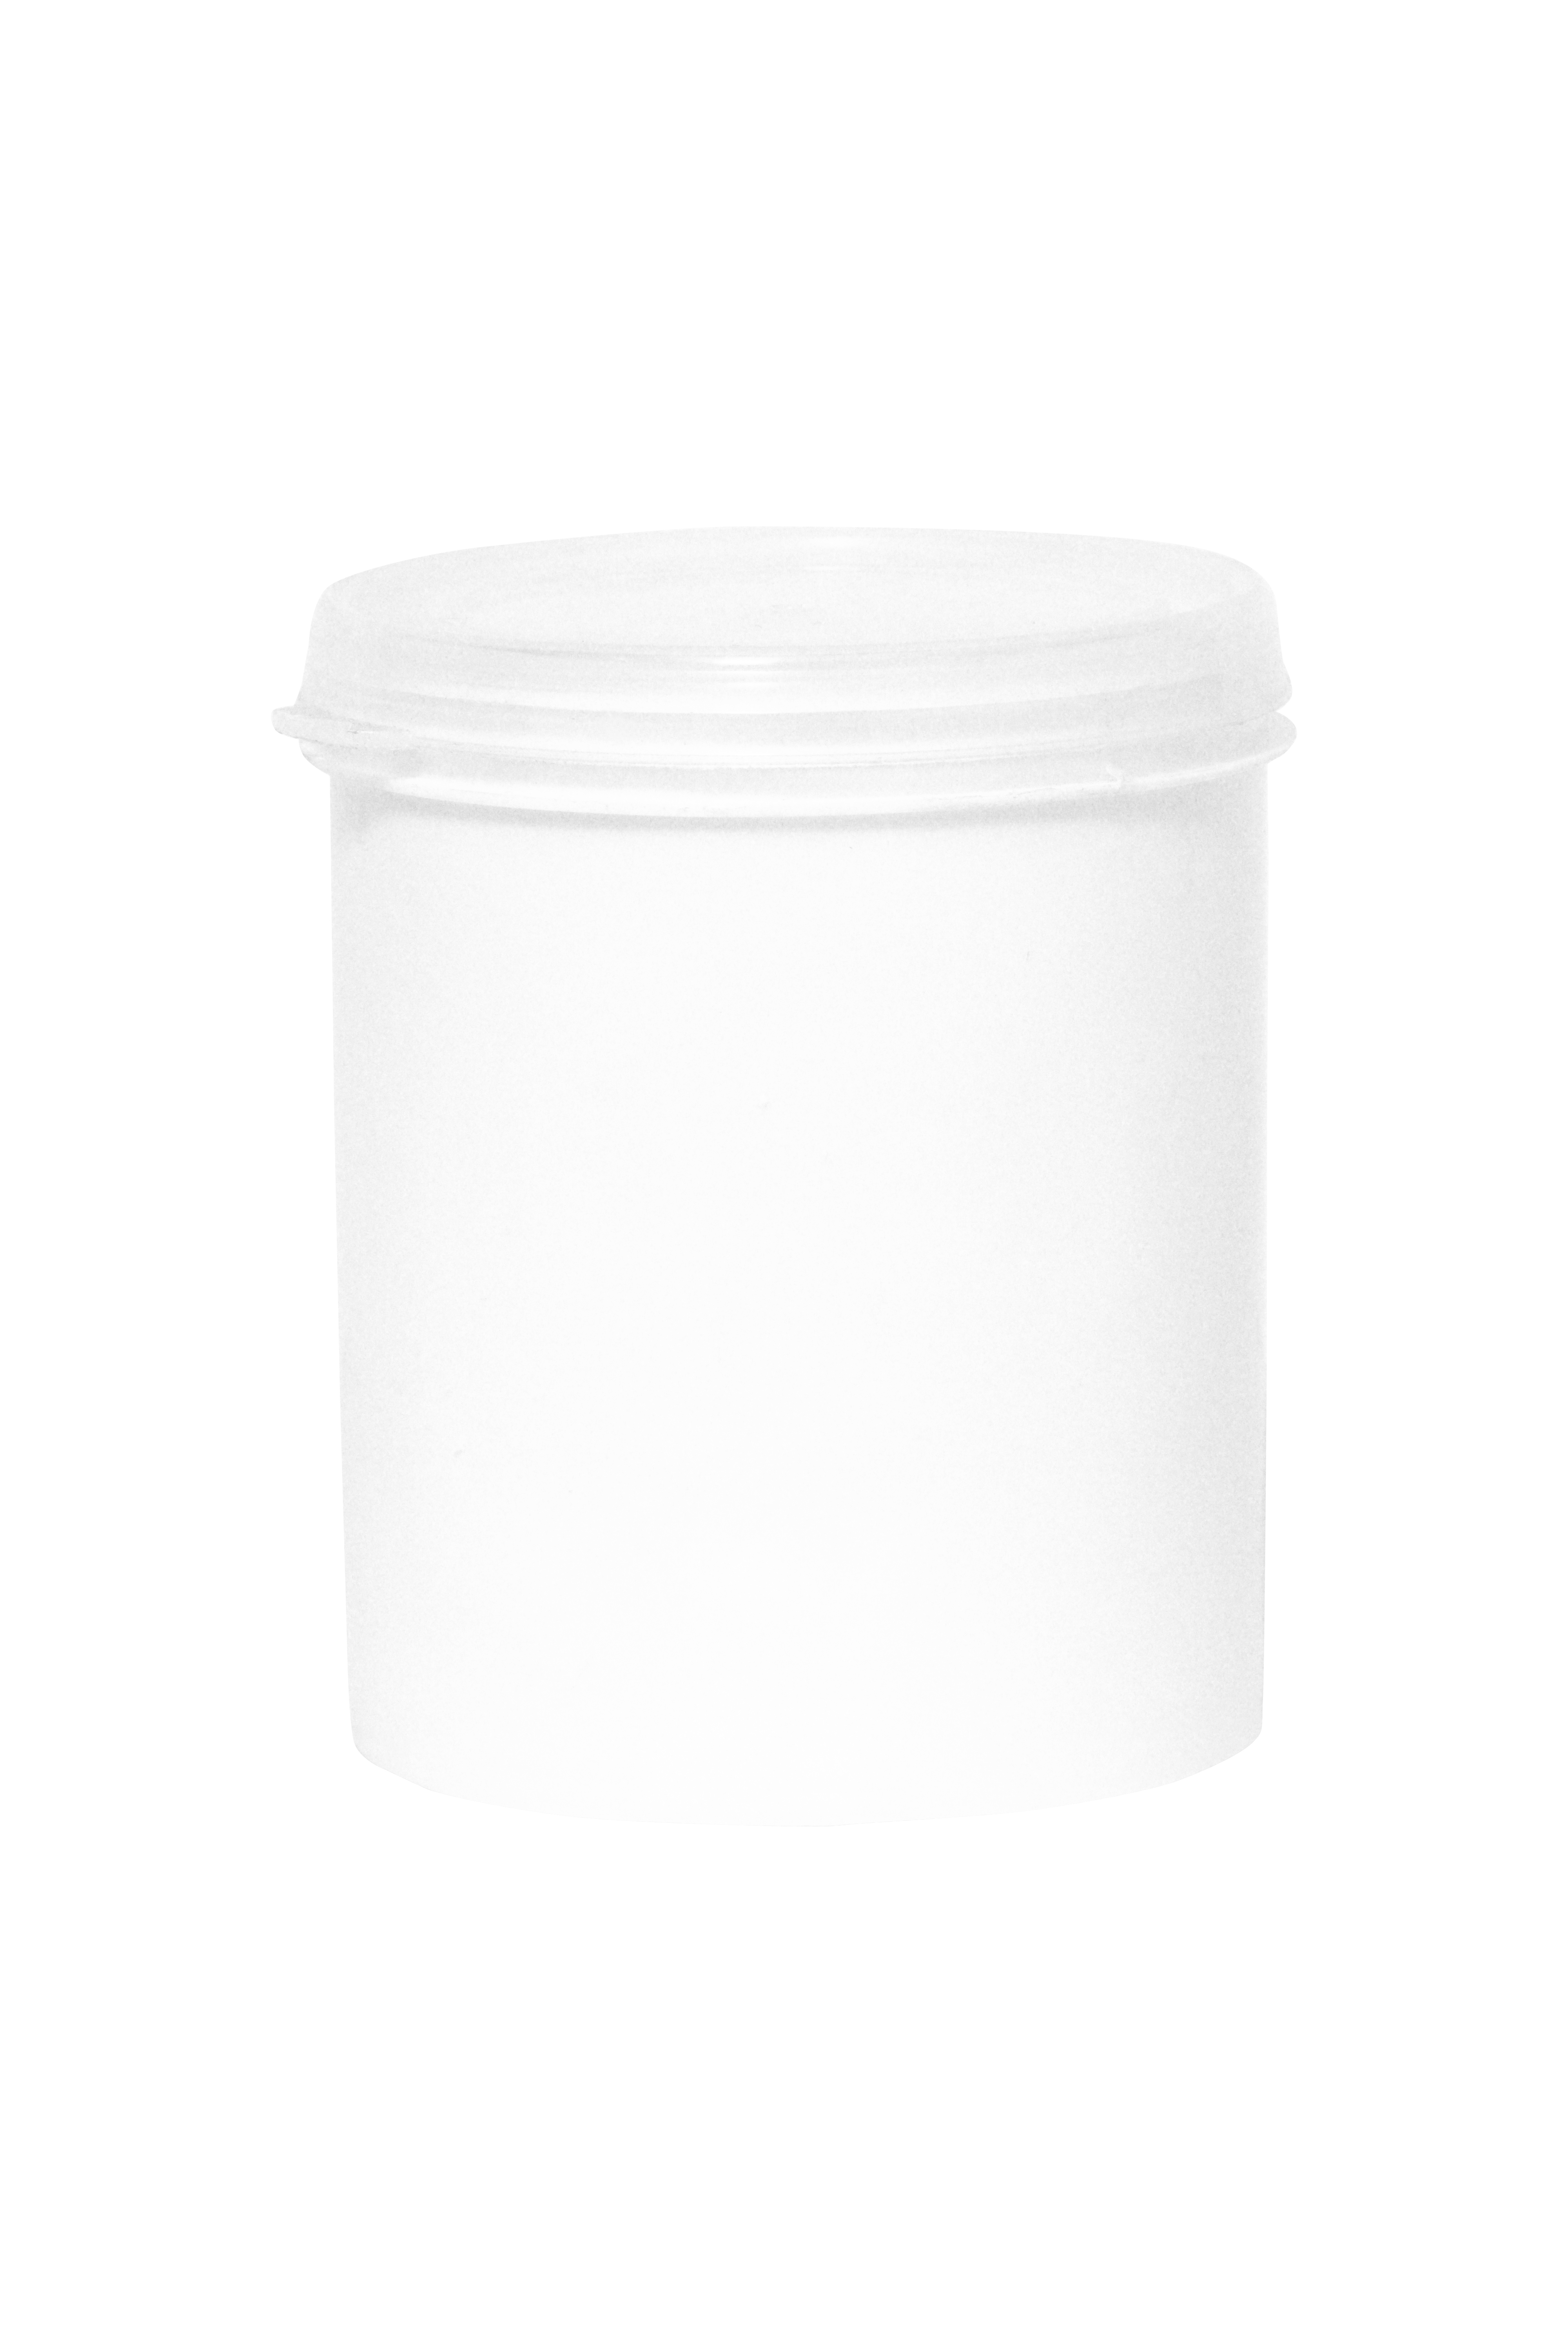 1Ltr Plain Transparent Paint Bucket